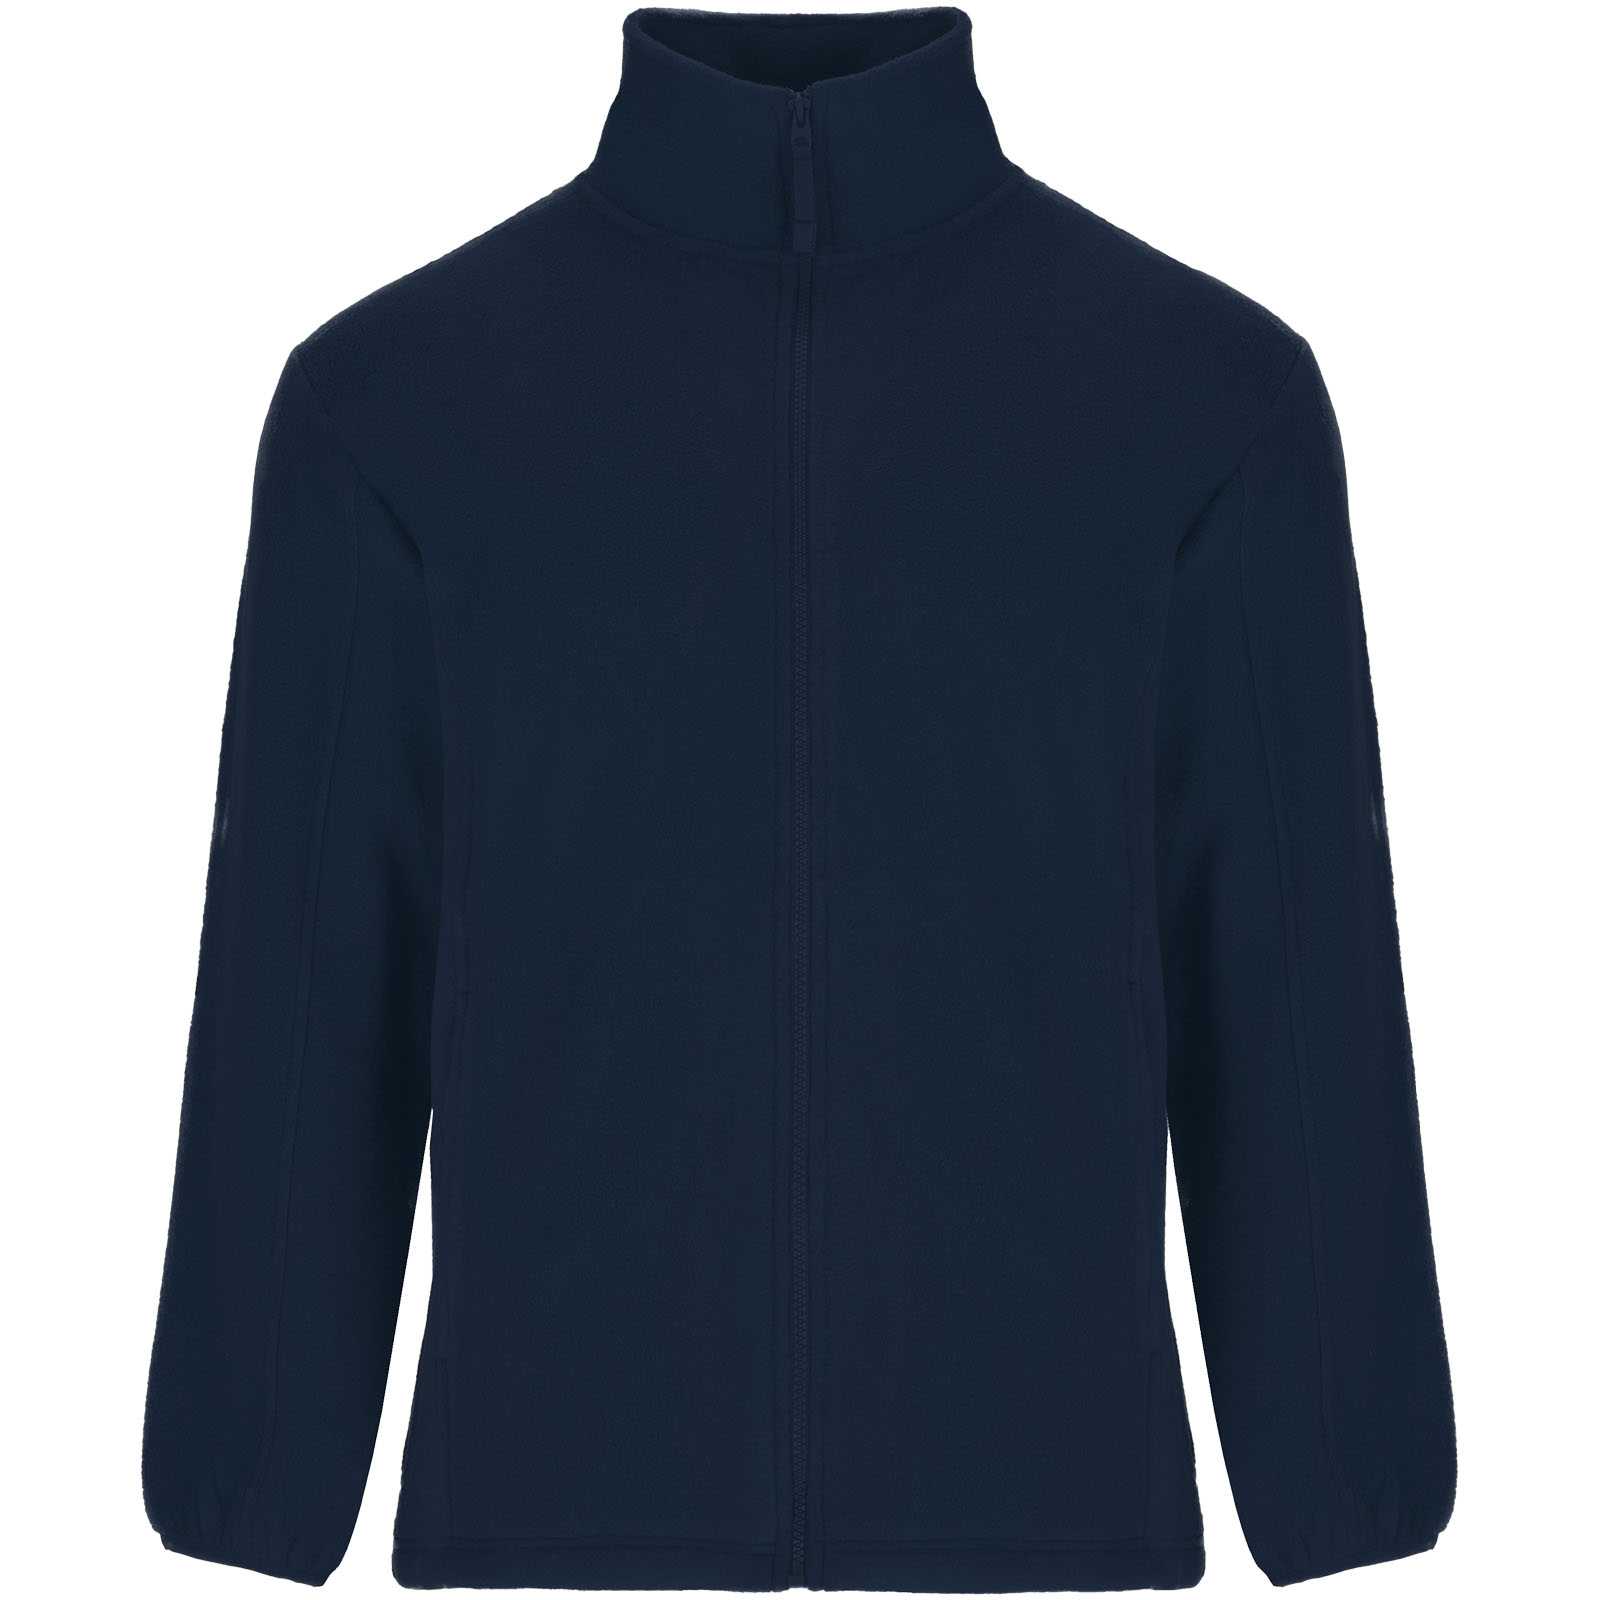 Clothing - Artic men's full zip fleece jacket